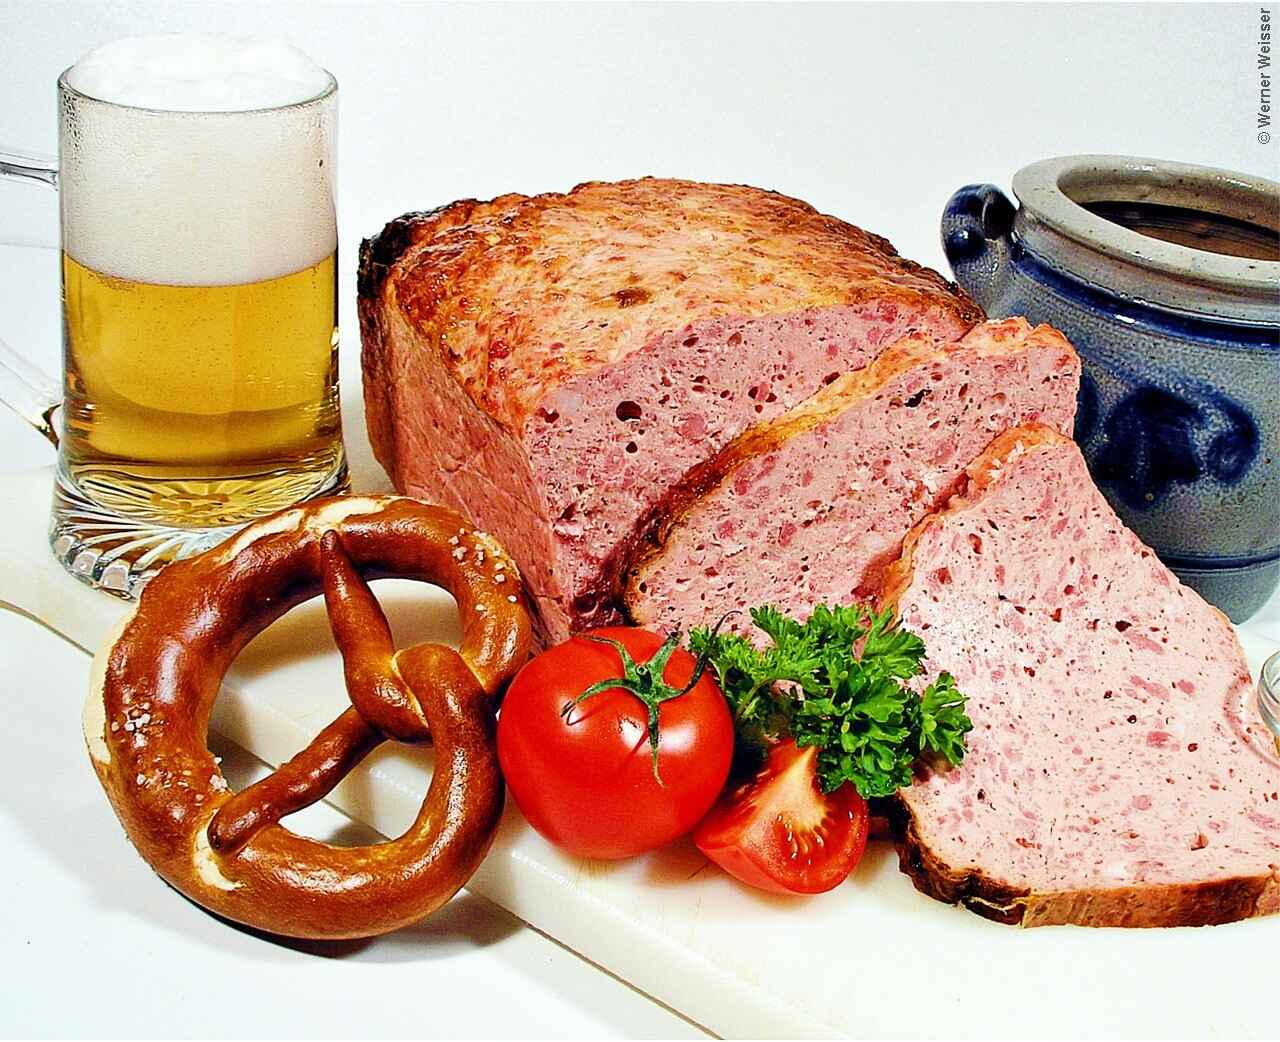 leberkase spécialité bavaroise jambon de viande biere bretzel